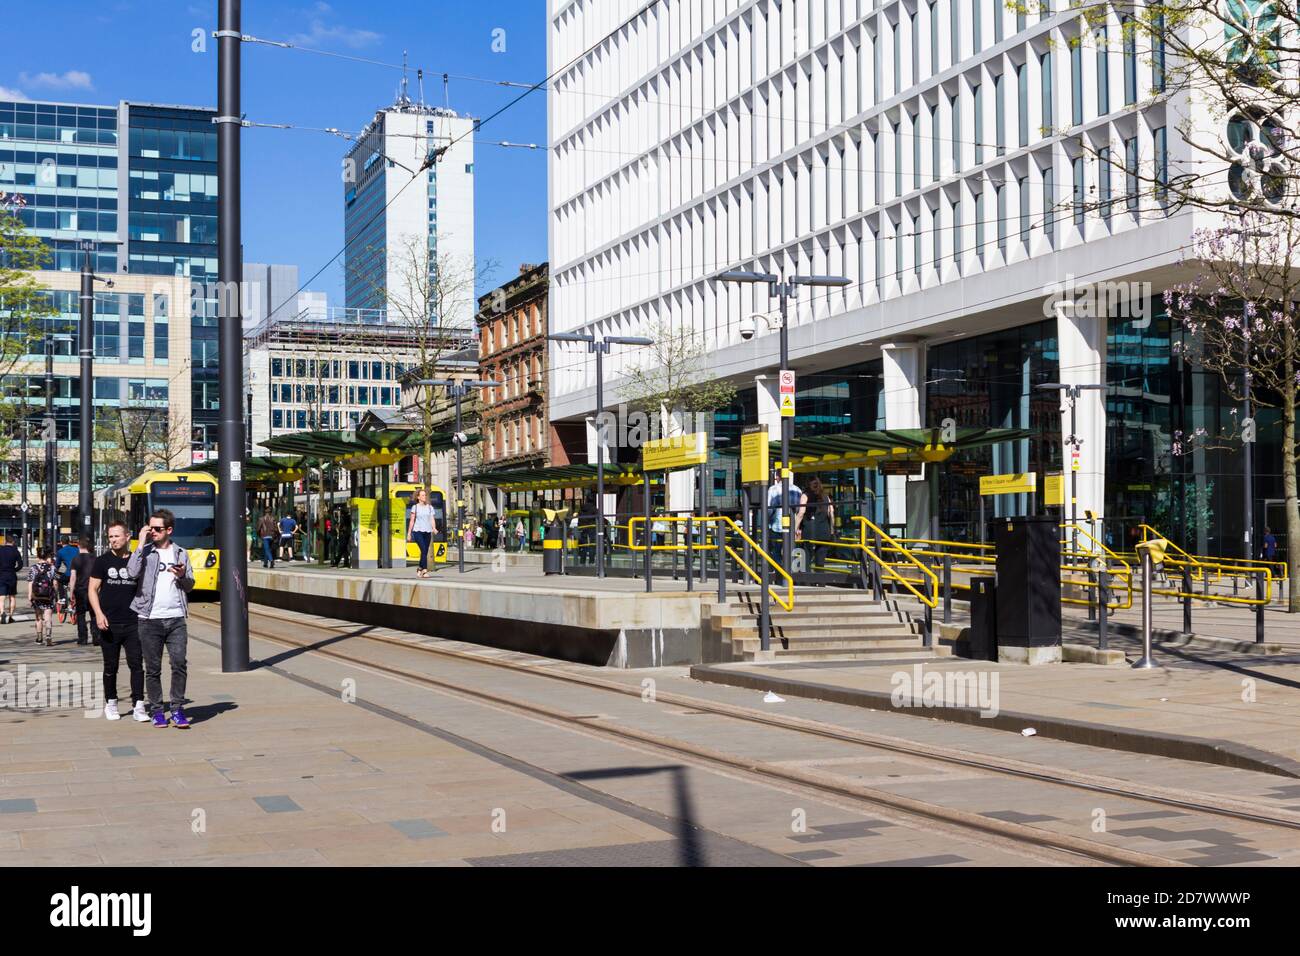 Metrolink St. Peters Square Station in Manchester. Die S-Bahn-Haltestelle im Stadtzentrum wurde 1992 eröffnet, 2015-16 umgesiedelt und als vier Bahnsteigegleis aufgewertet. Stockfoto